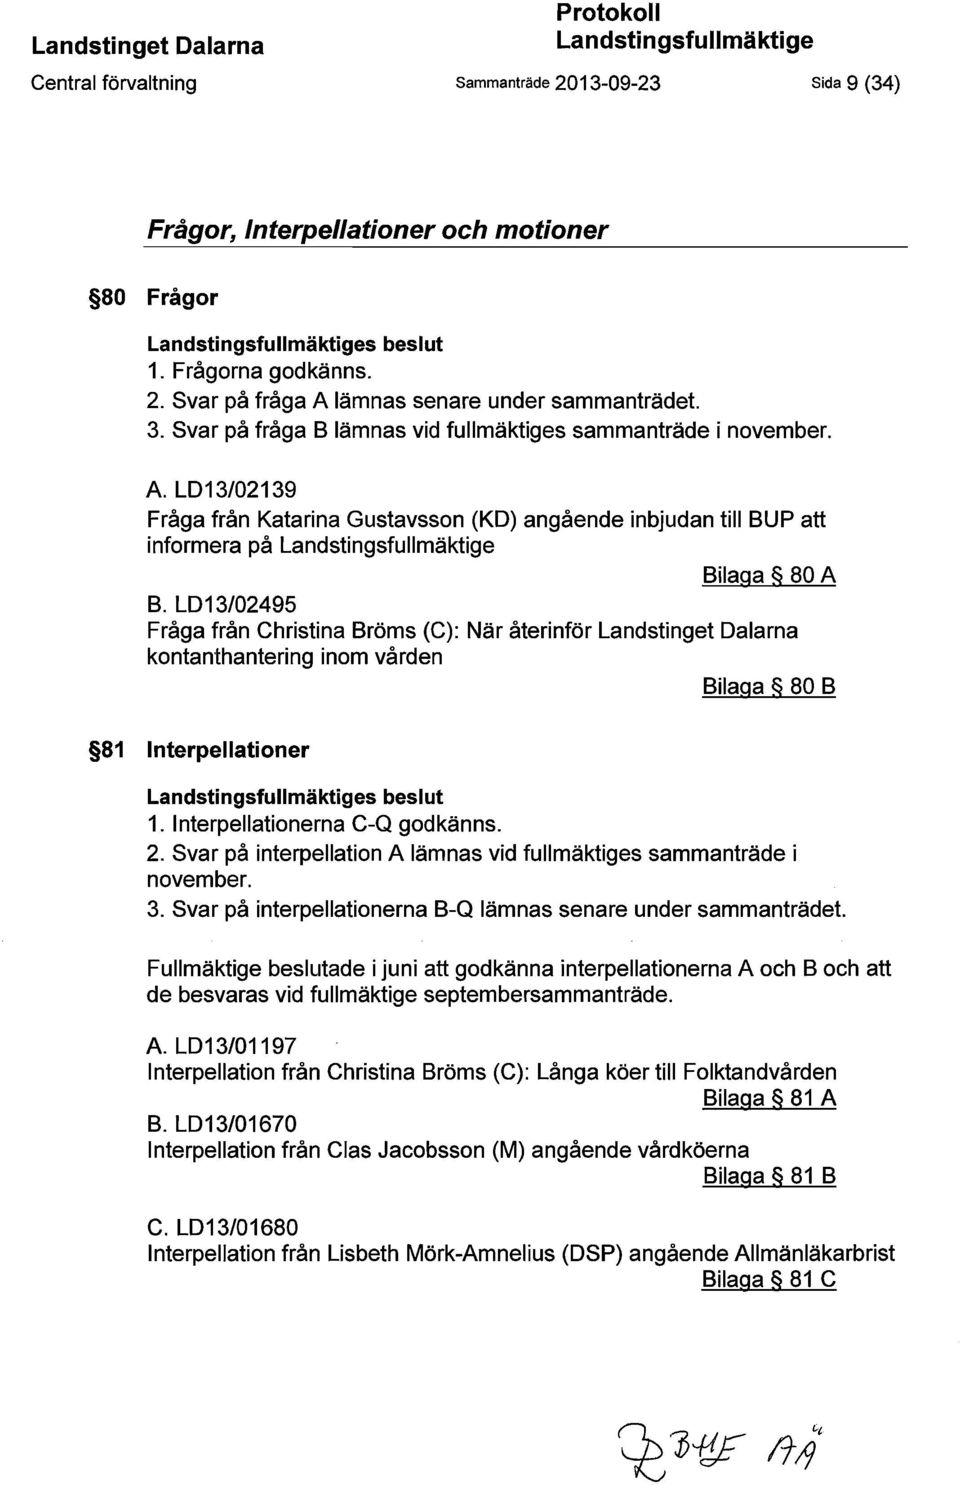 LD13/02495 Fråga från Christina Bröms (C): När återinför Landstinget Dalarna kontanthantering inom vården Bilaga 80 B 81 Interpellationer Landstingsfullmäktiges beslut 1.